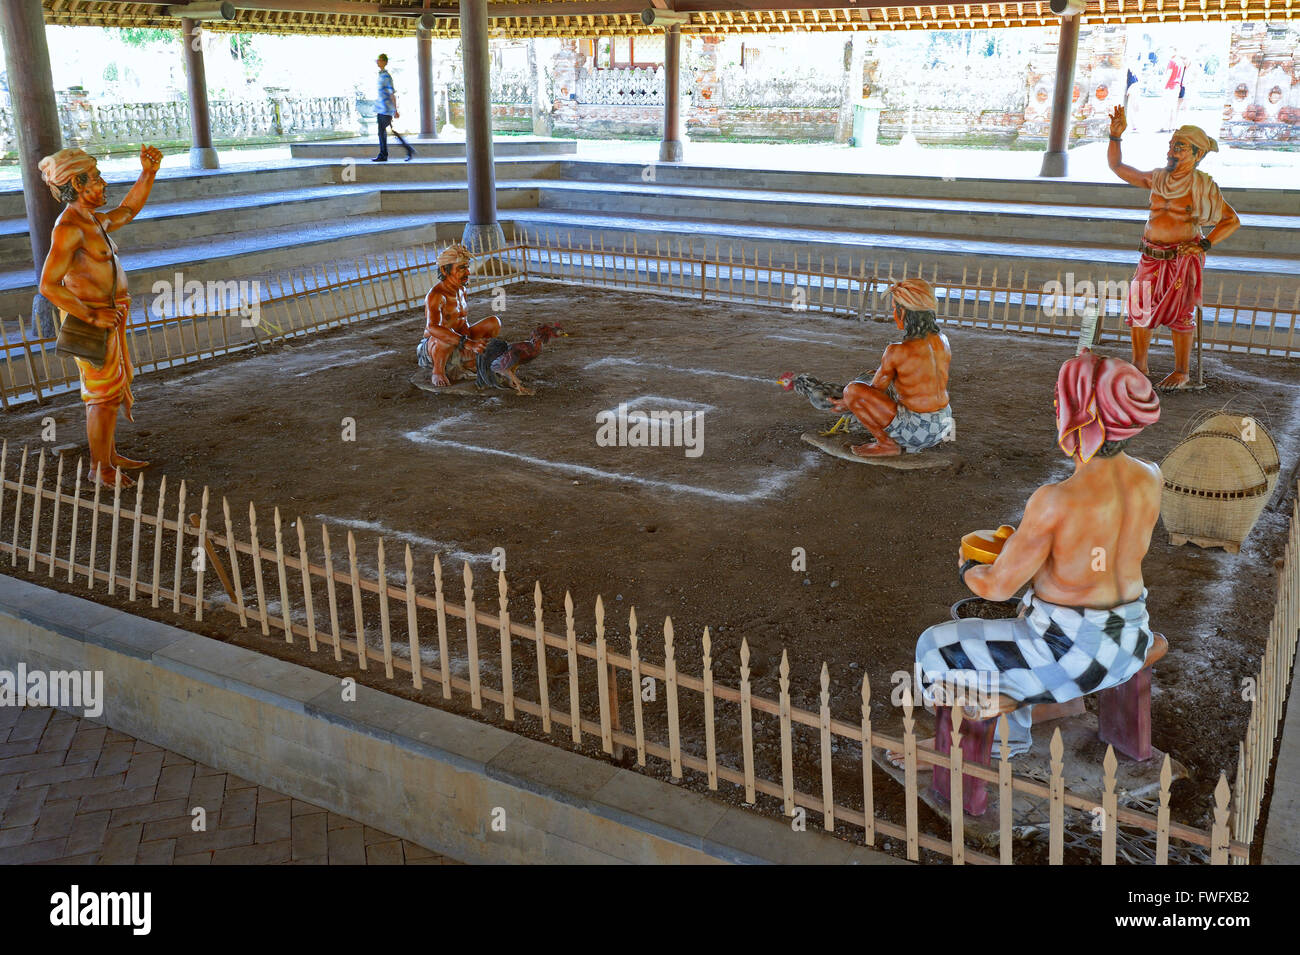 Darstellung des traditionellen Hahnenkampfes, Tempel Pura Taman Ayun, Balis zweitwichtigster Tempel, nationales Heiligtum, Bali, Indonesien Stock Photo